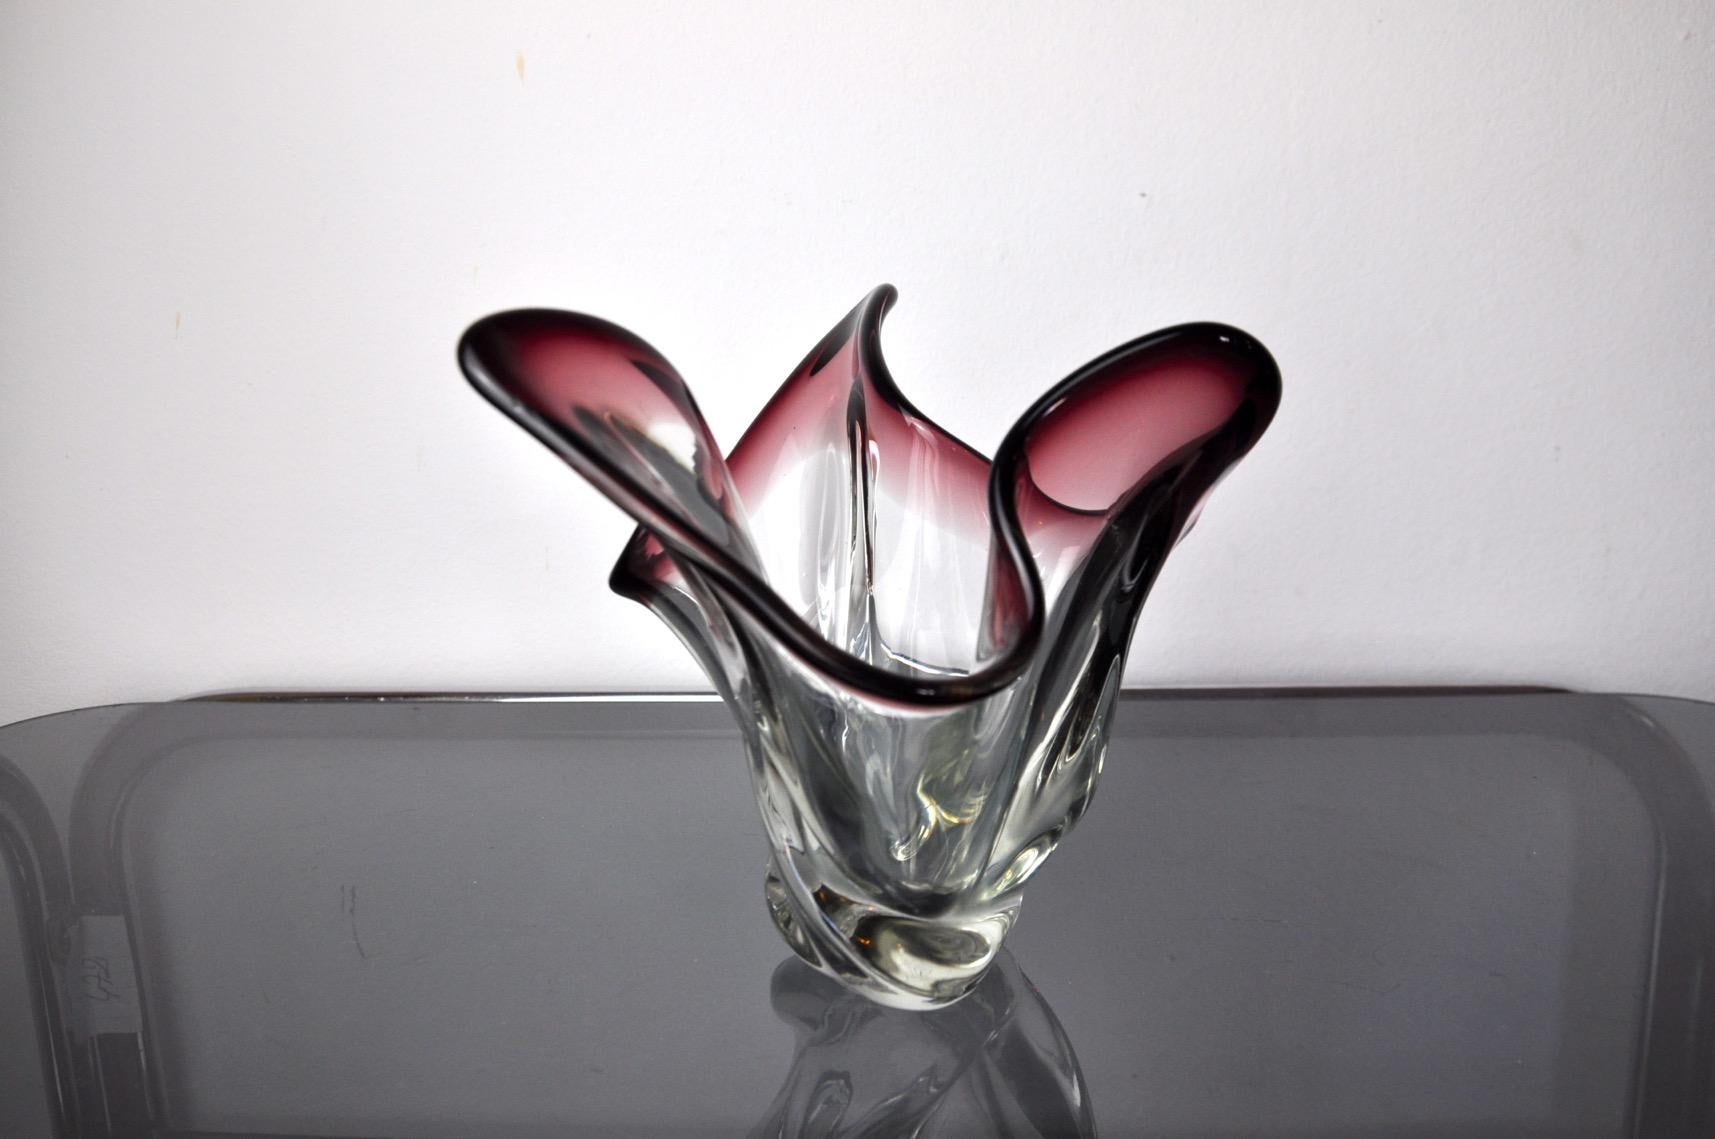 Vase en verre d'art italien soufflé à la main Sommerso, violet et transparent. Attribué à seguso, murano italie, années 1960. Ce petit vase coloré présente un beau design avec des détails dessinés et un bord nervuré selon la technique du sommerso.